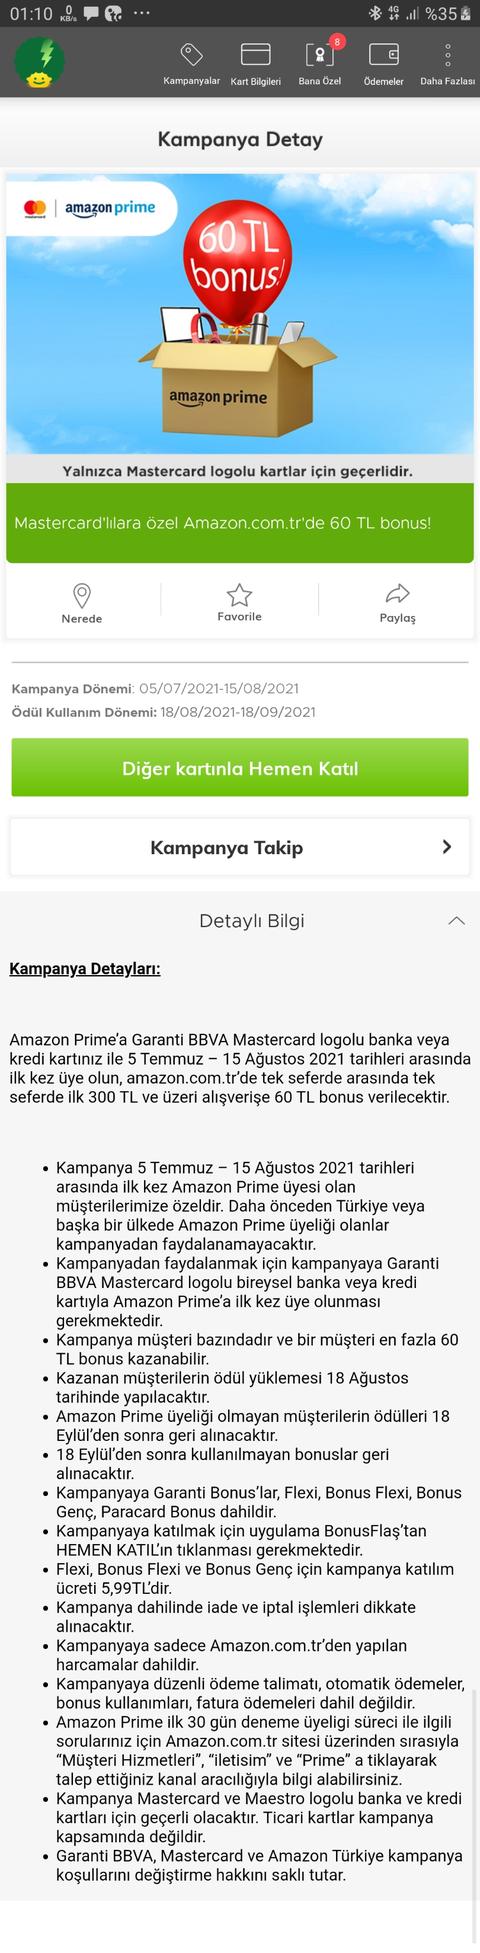 Amazon Prime 300/60 Bonus Mastercard